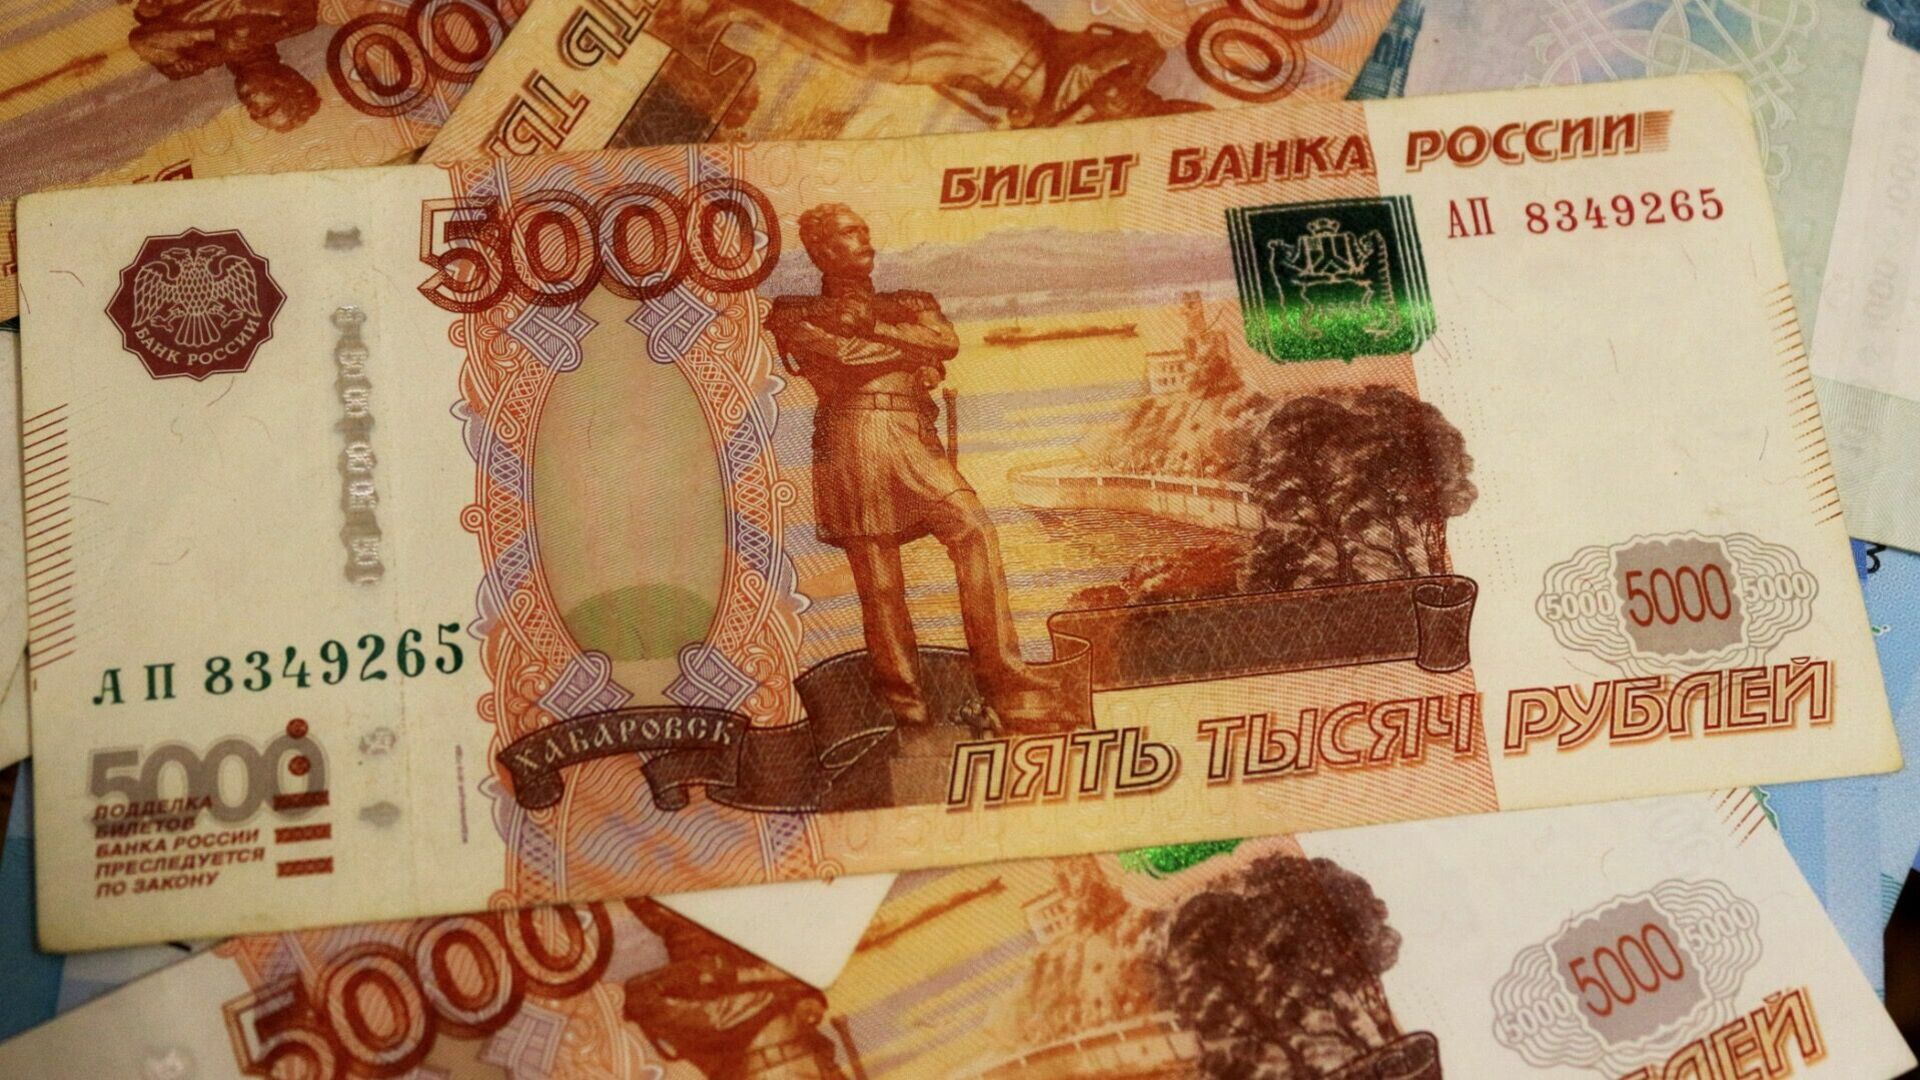 Бухгалтера из Челябинской области мошенники обманули на 3 млн рублей